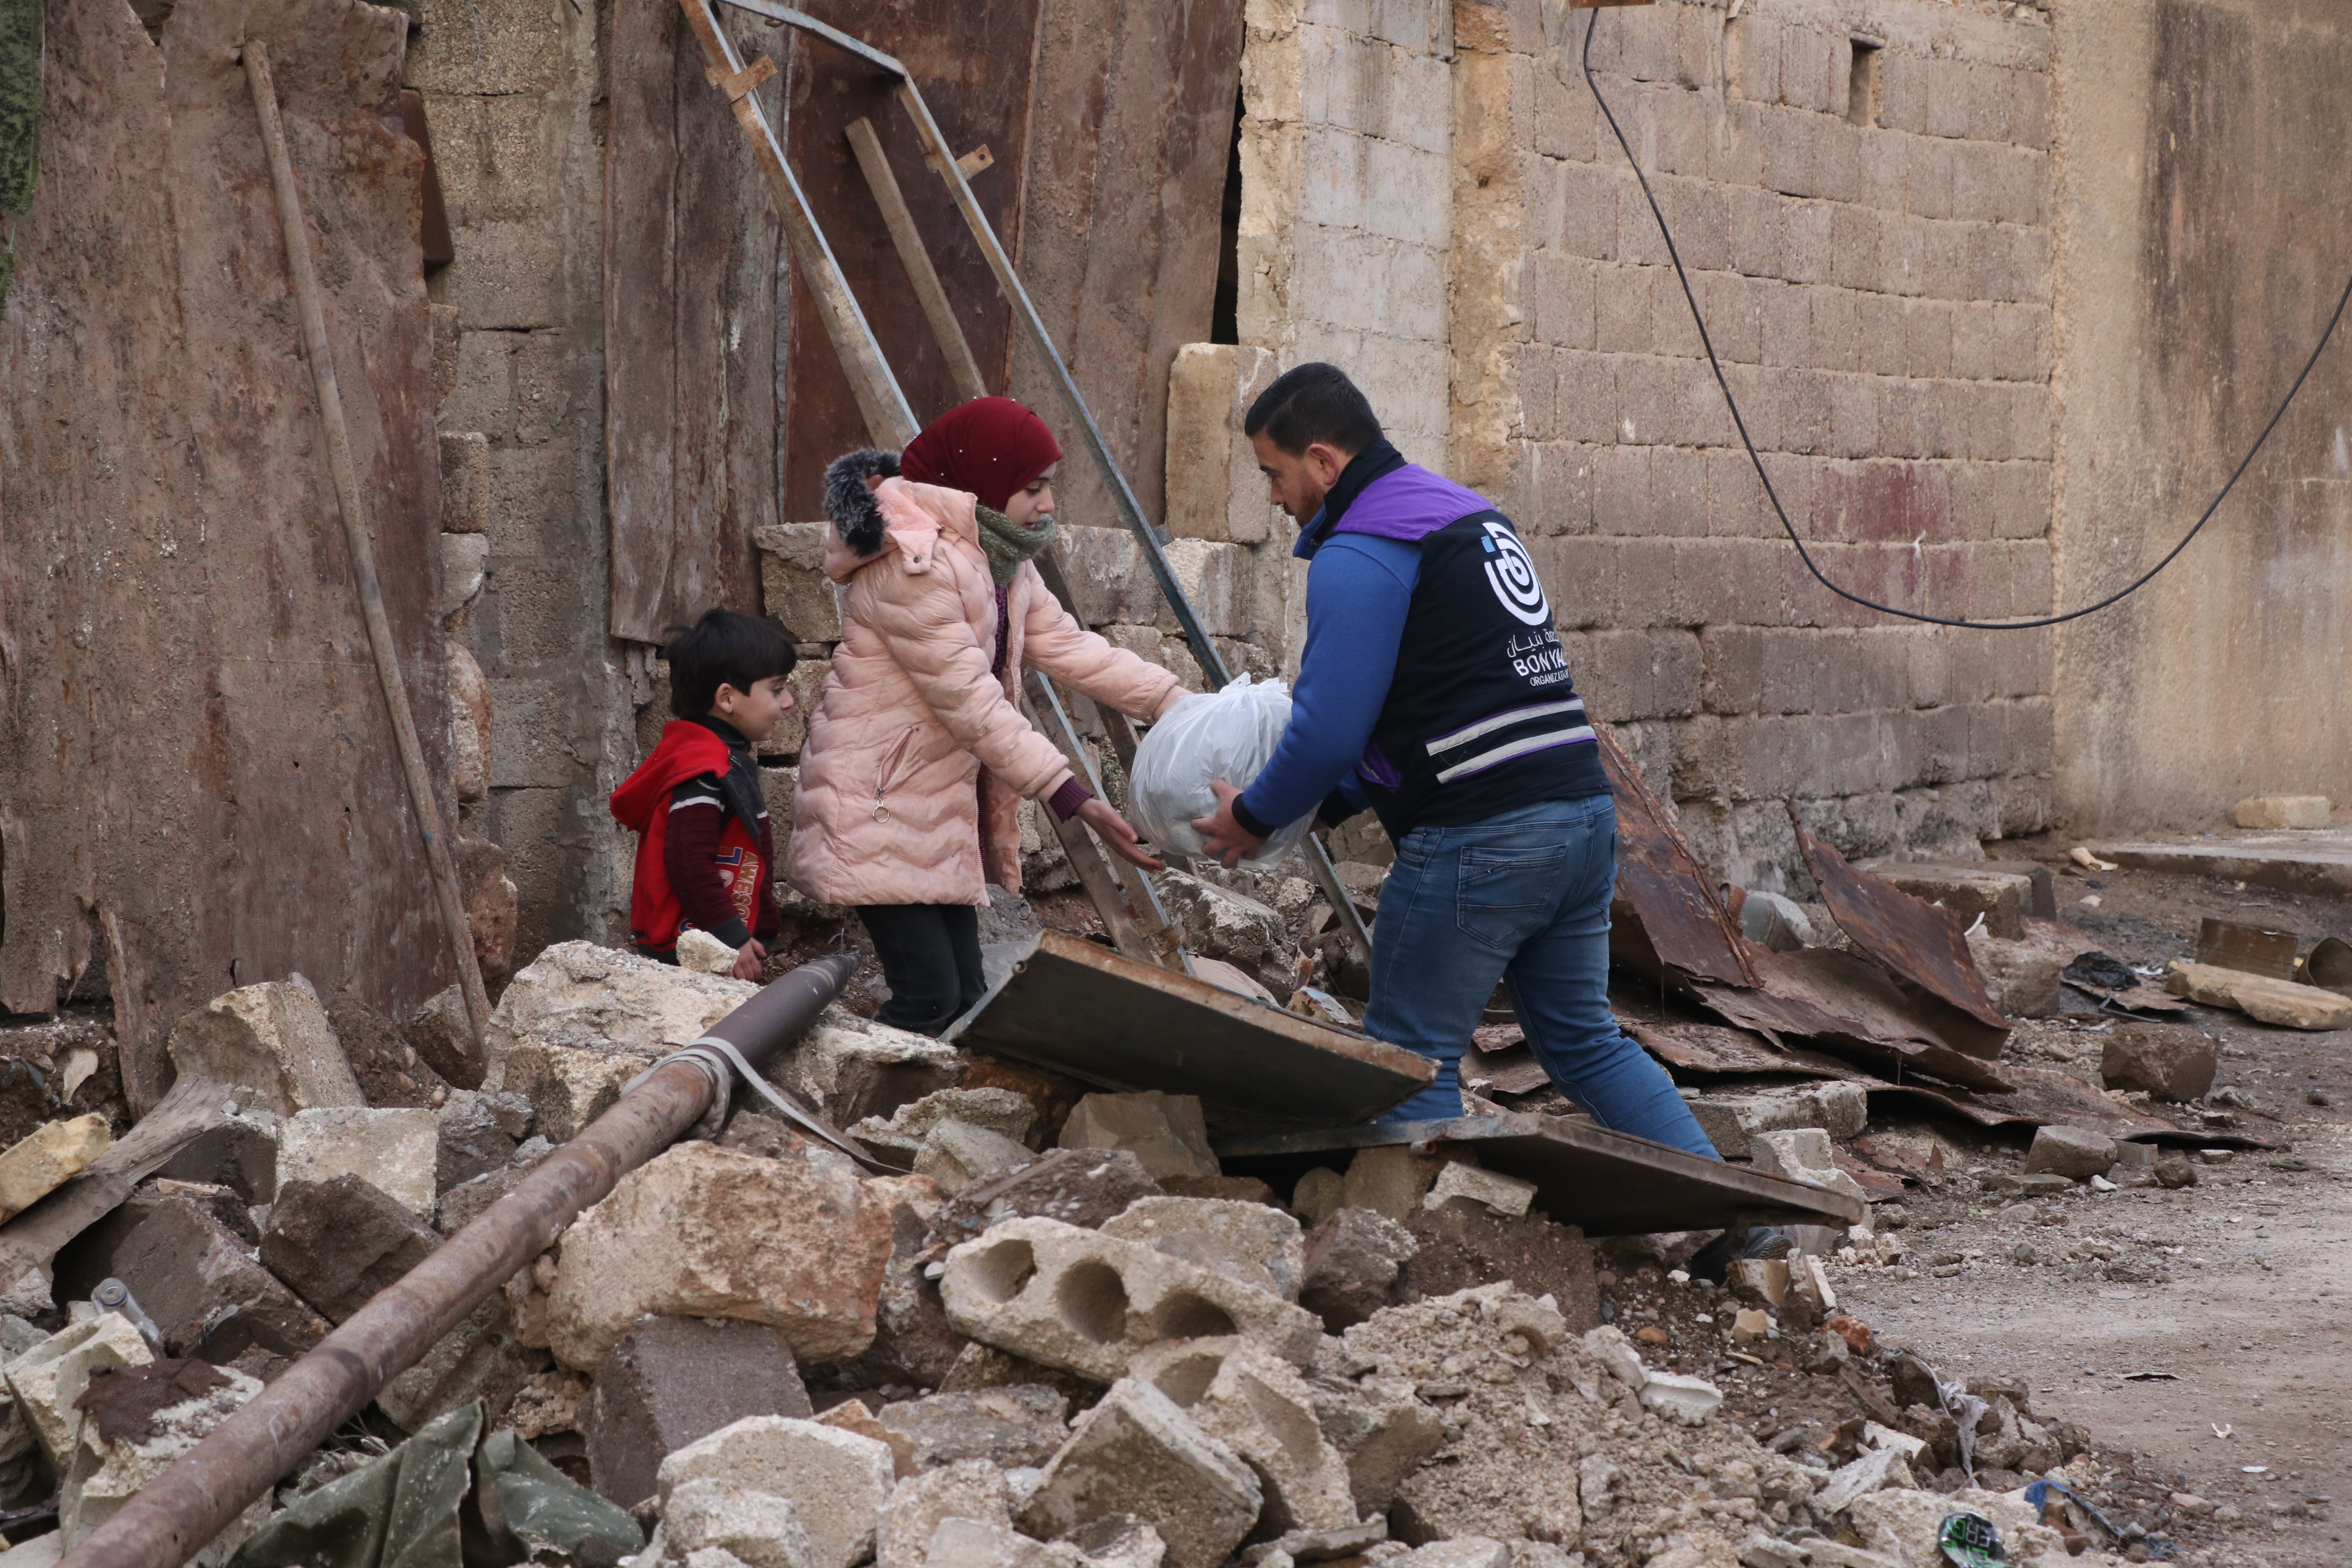 Mann übergibt eine Tüte mit Hilfsgütern an eine Frau. Daneben steht ein kleines Kind. Im Vordergrund sind Trümmer zu sehen.